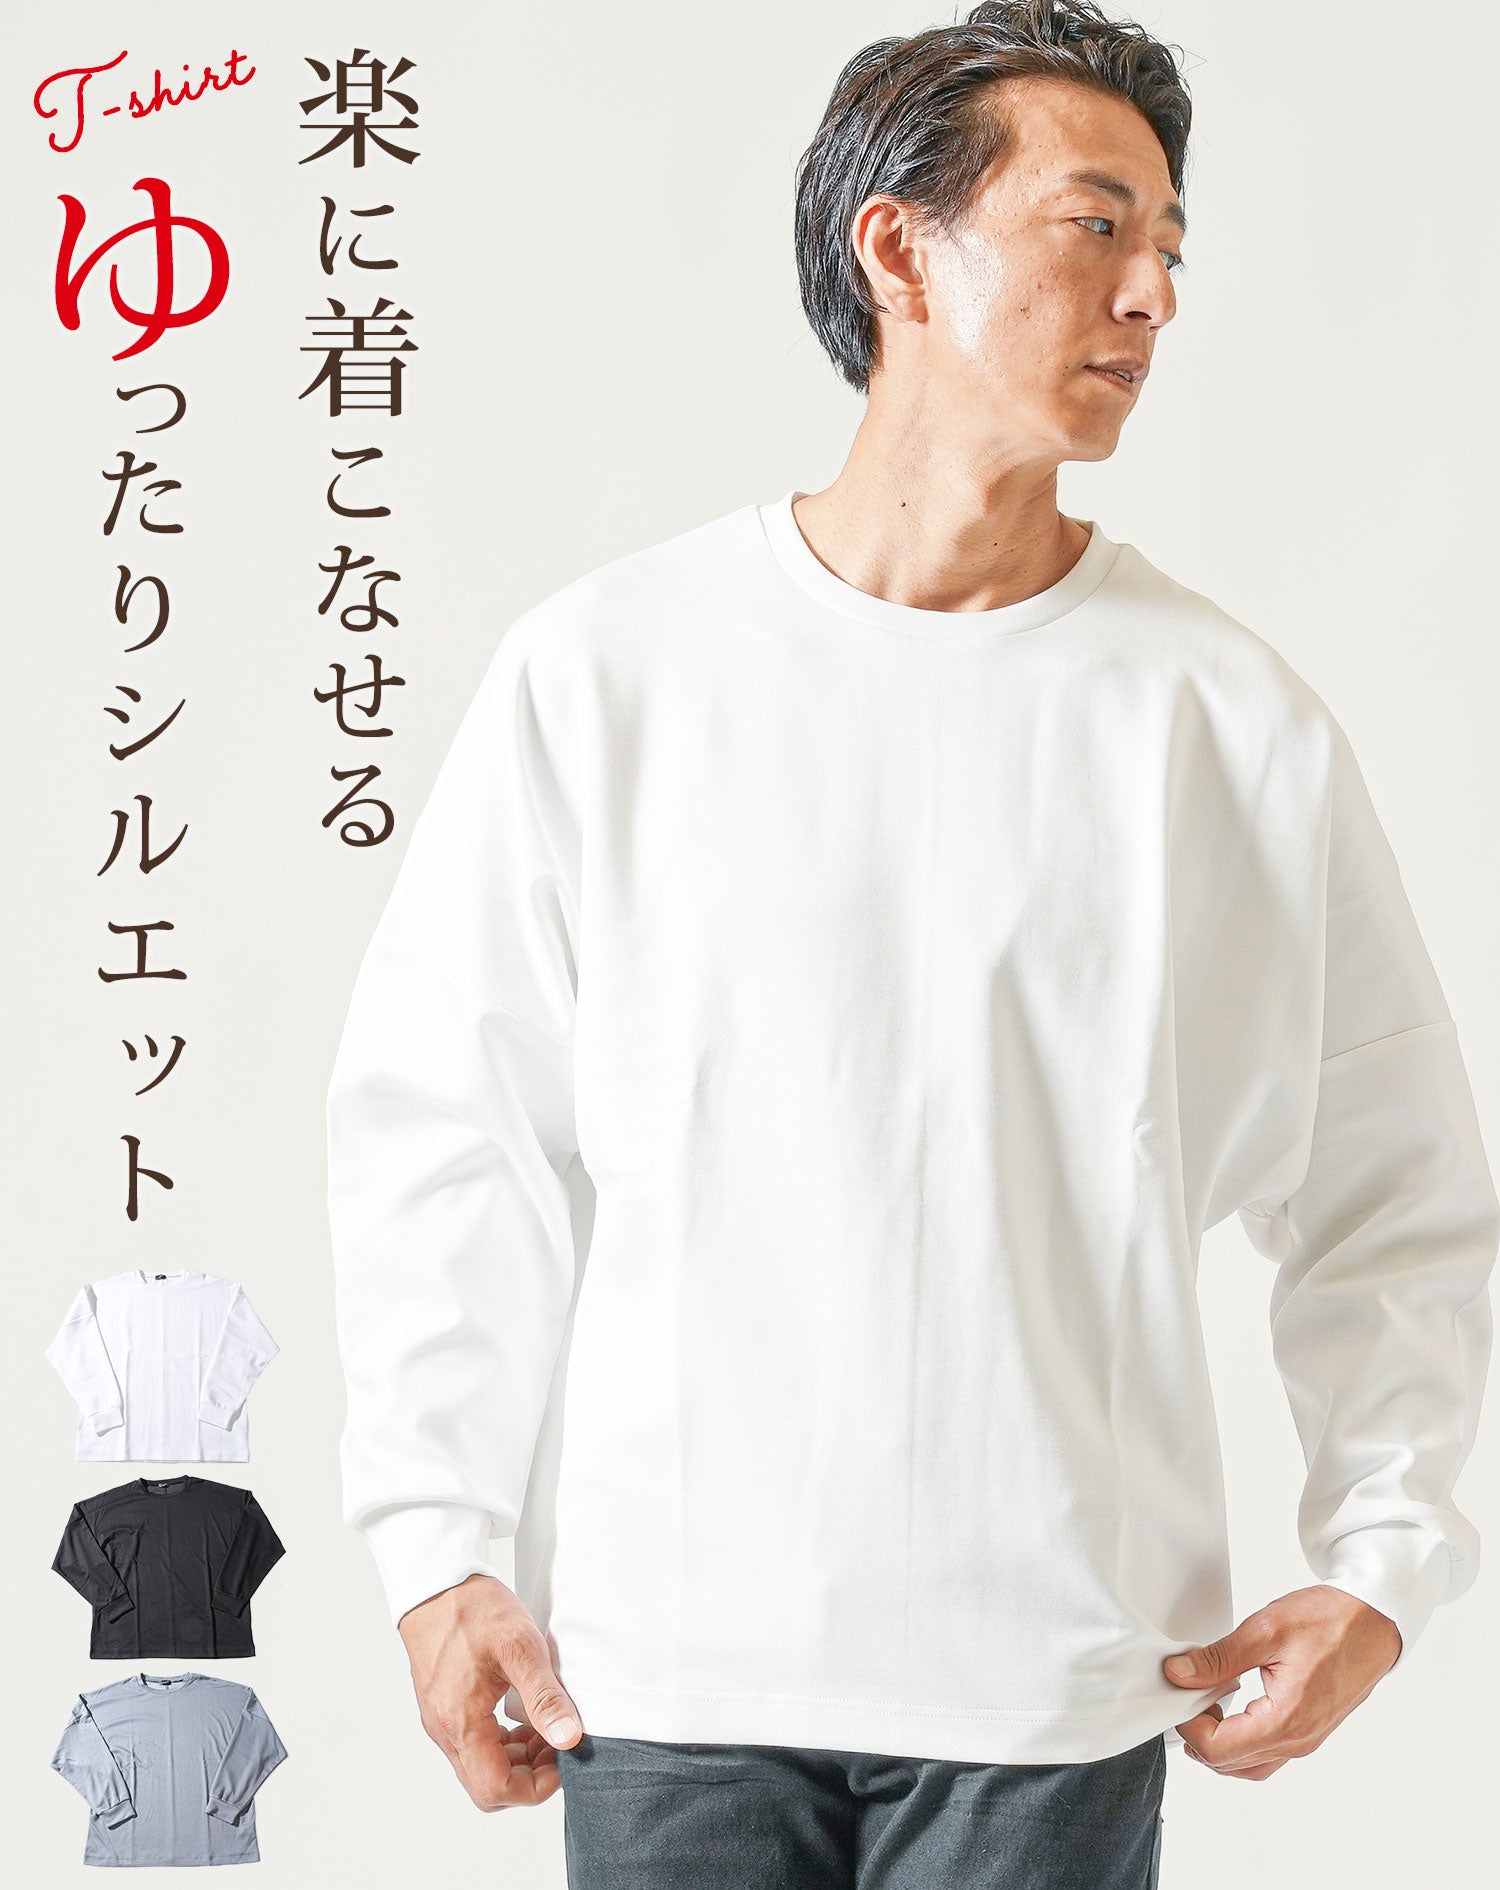 新品【 OFF-WHITE 】HAND T-SHIRT XL オーバーサイズ